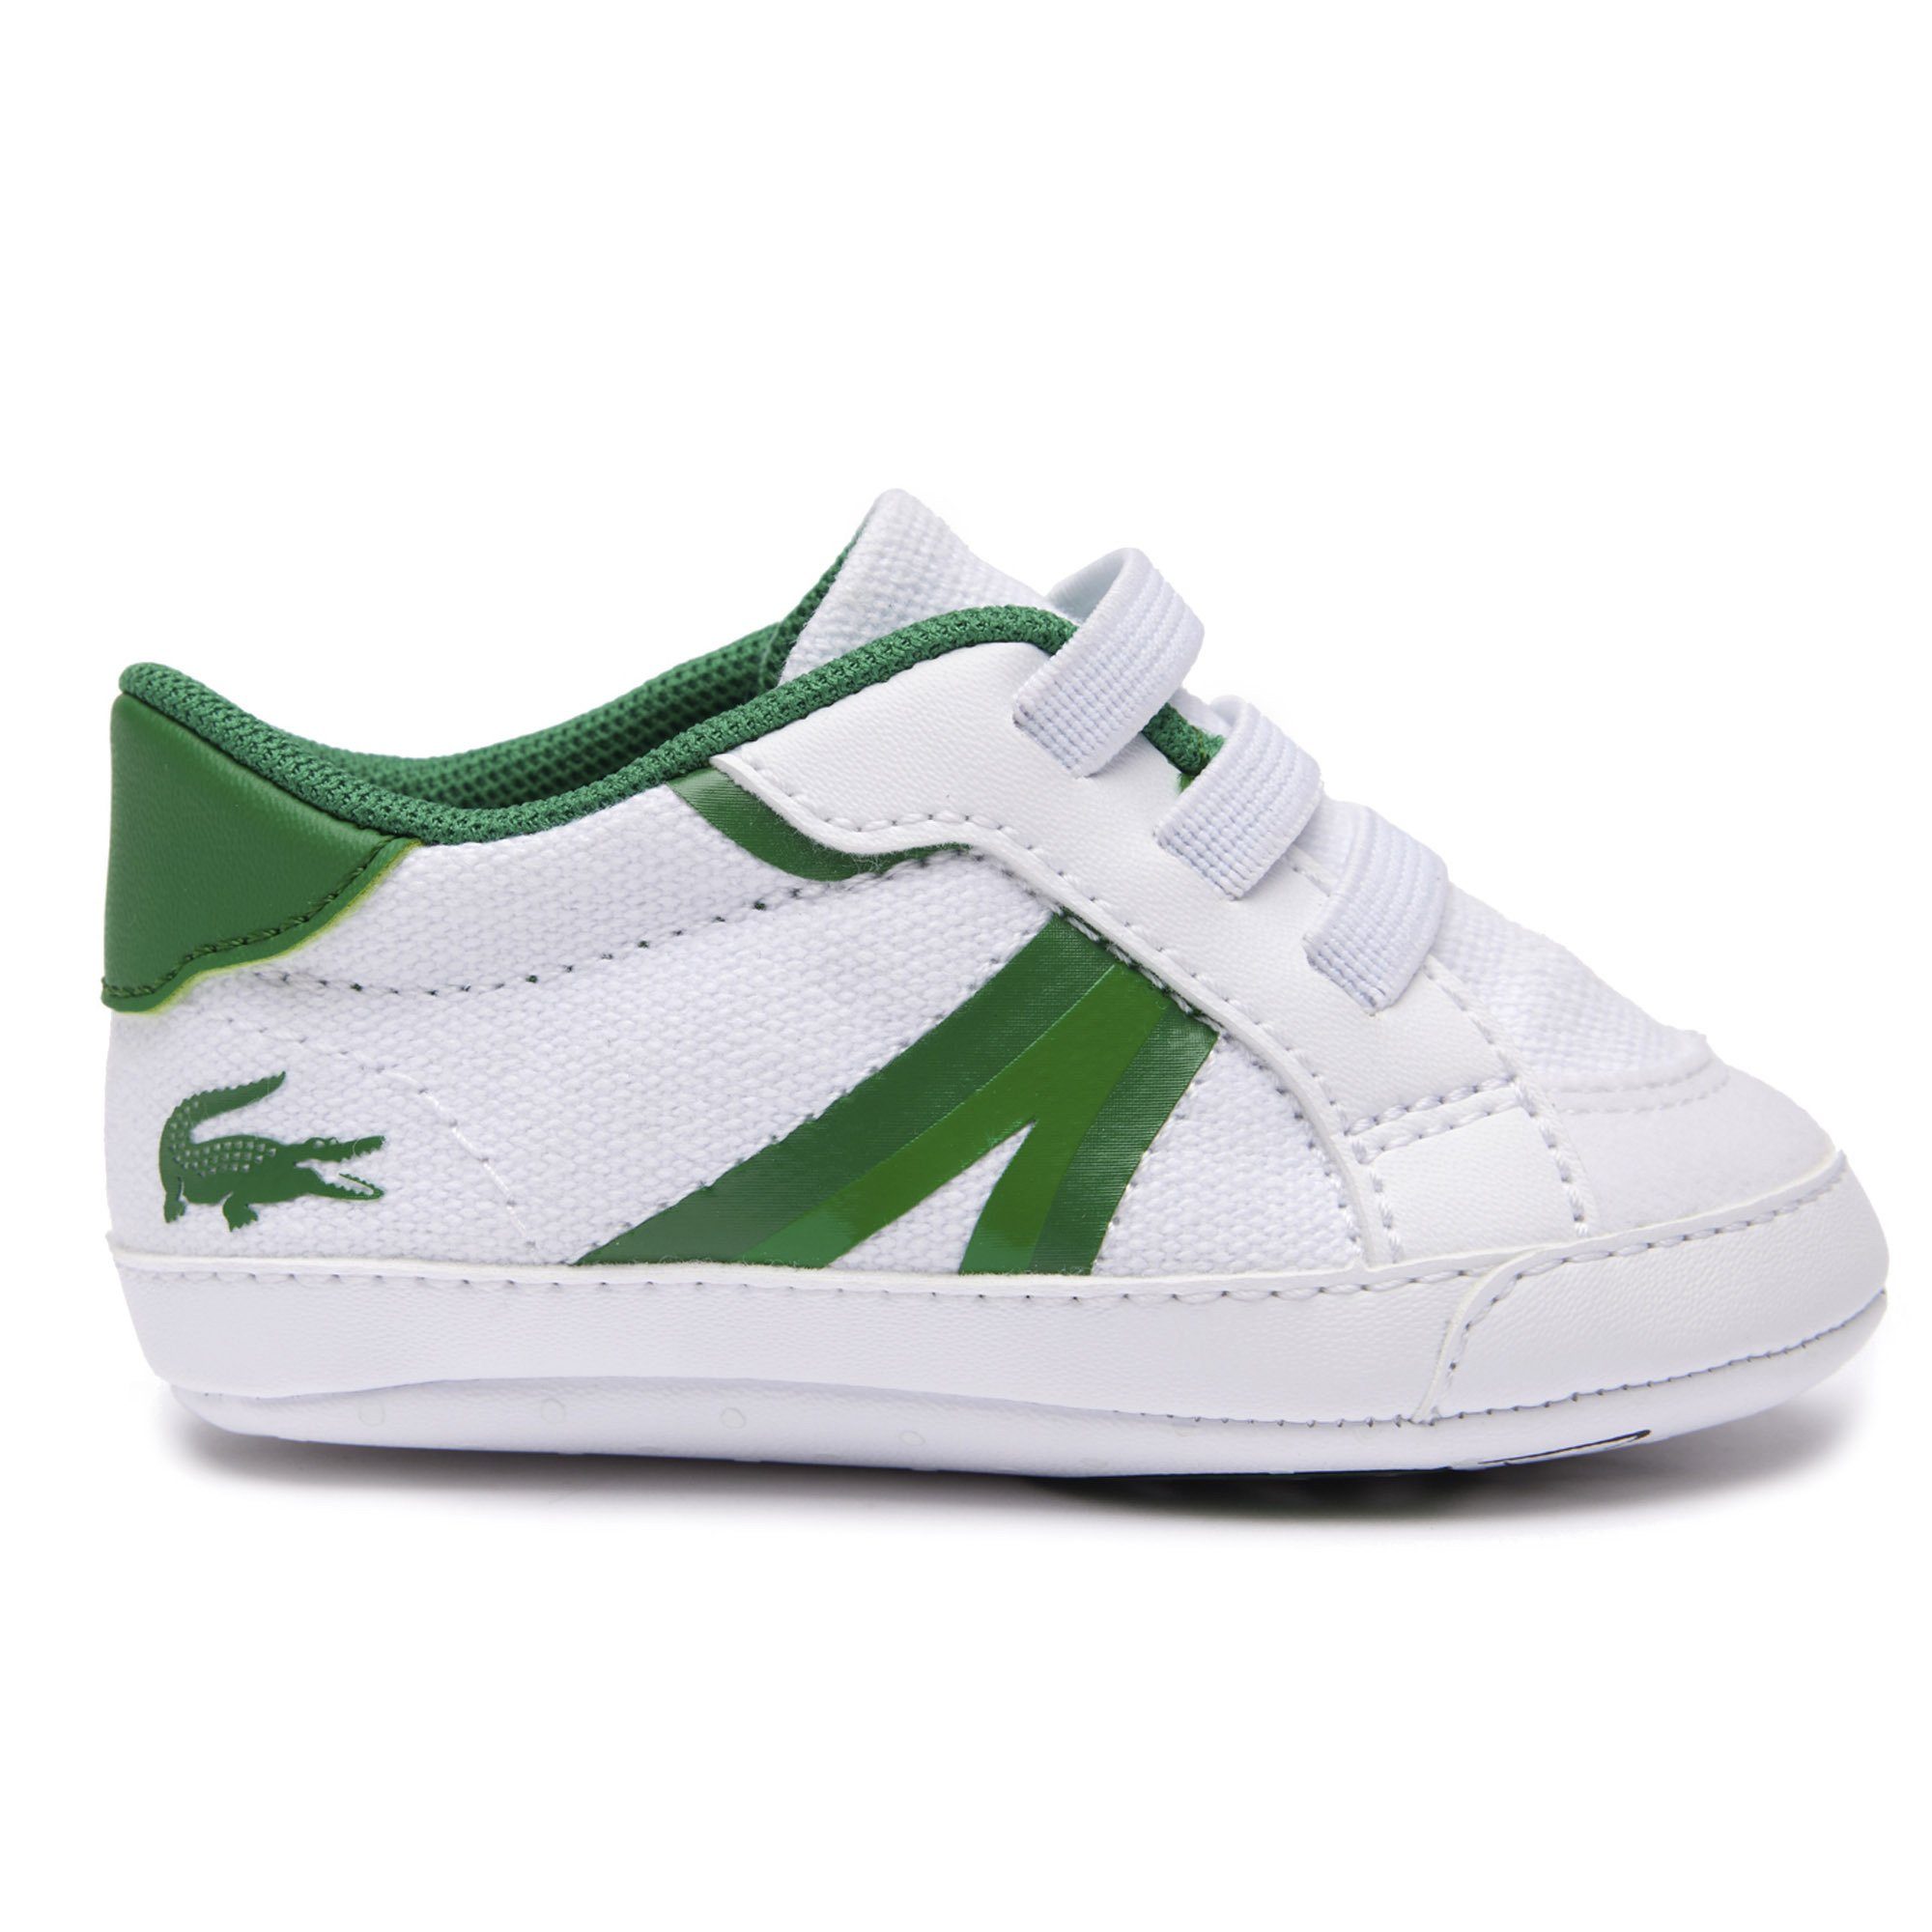 Weiß/Grün Krabbelschuhe, Baby L004 Sneaker, - Krabbelschuh Schuhe Lacoste Cub,